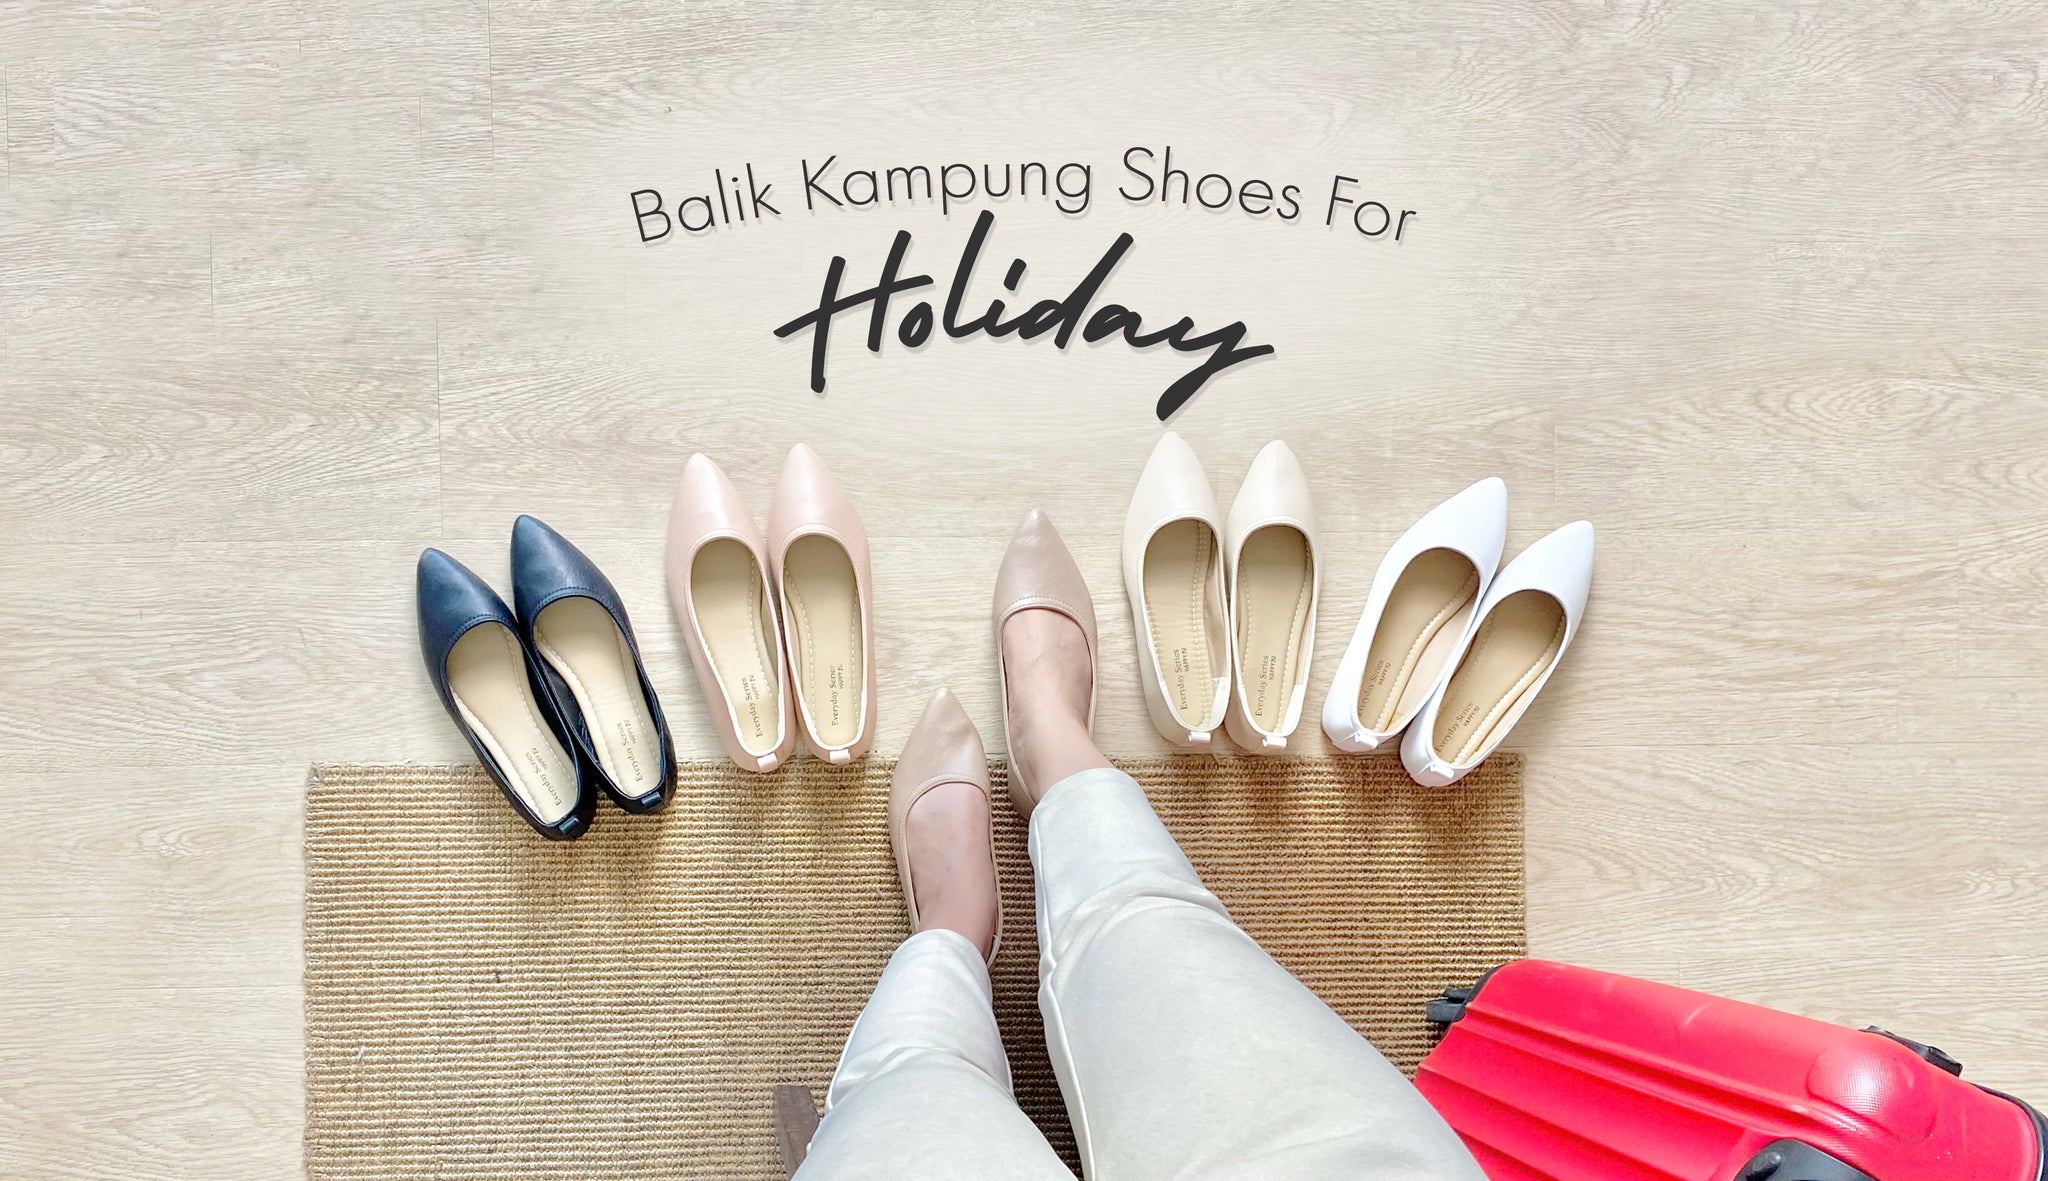 Balik Kampung Shoes for Holiday